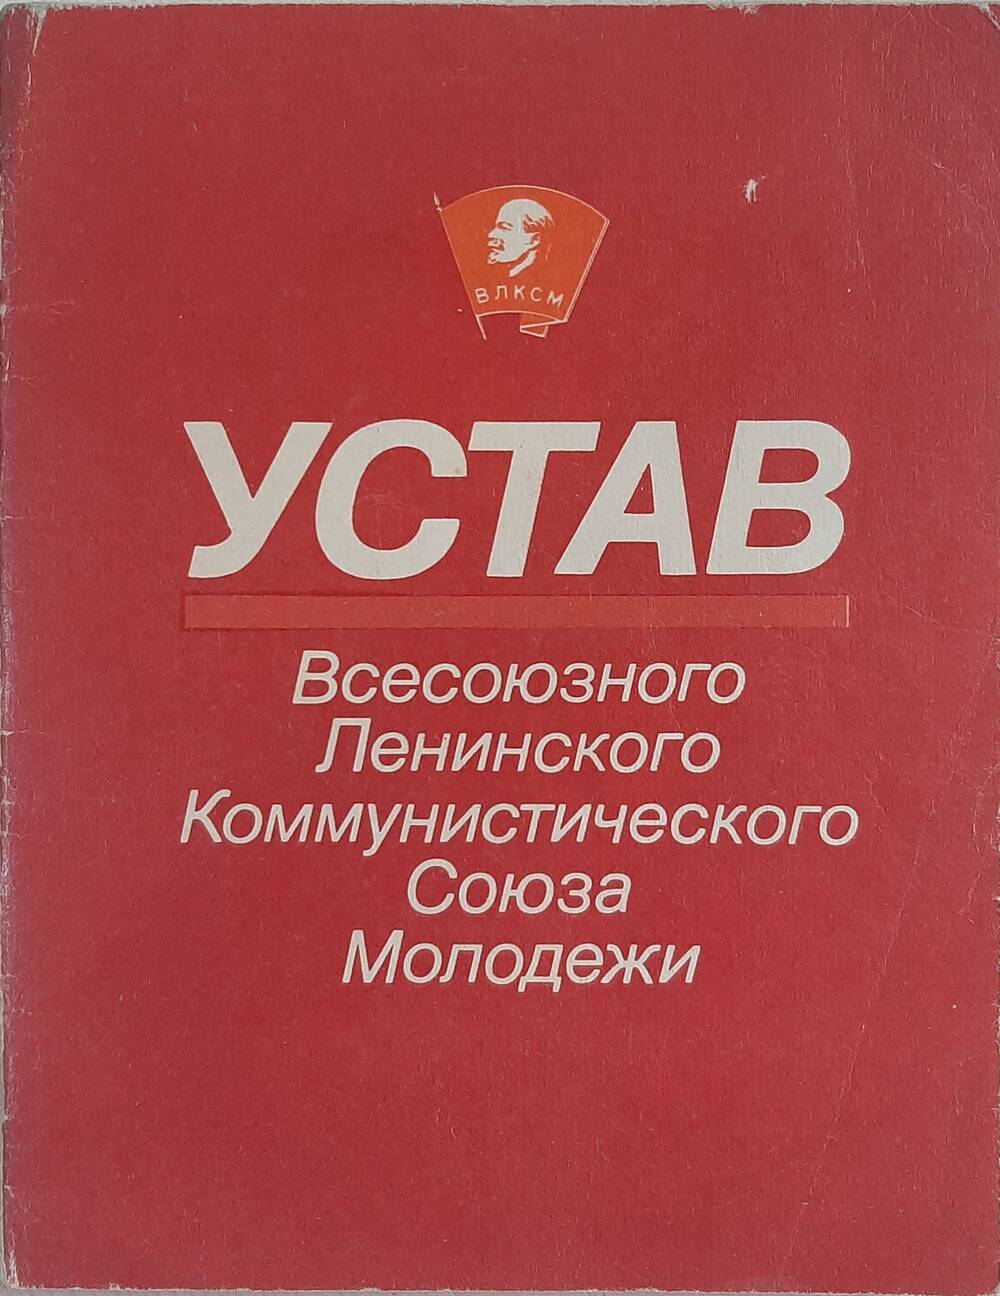 Брошюра. Устав Всесоюзного Ленинского Коммунистического Союза Молодежи.